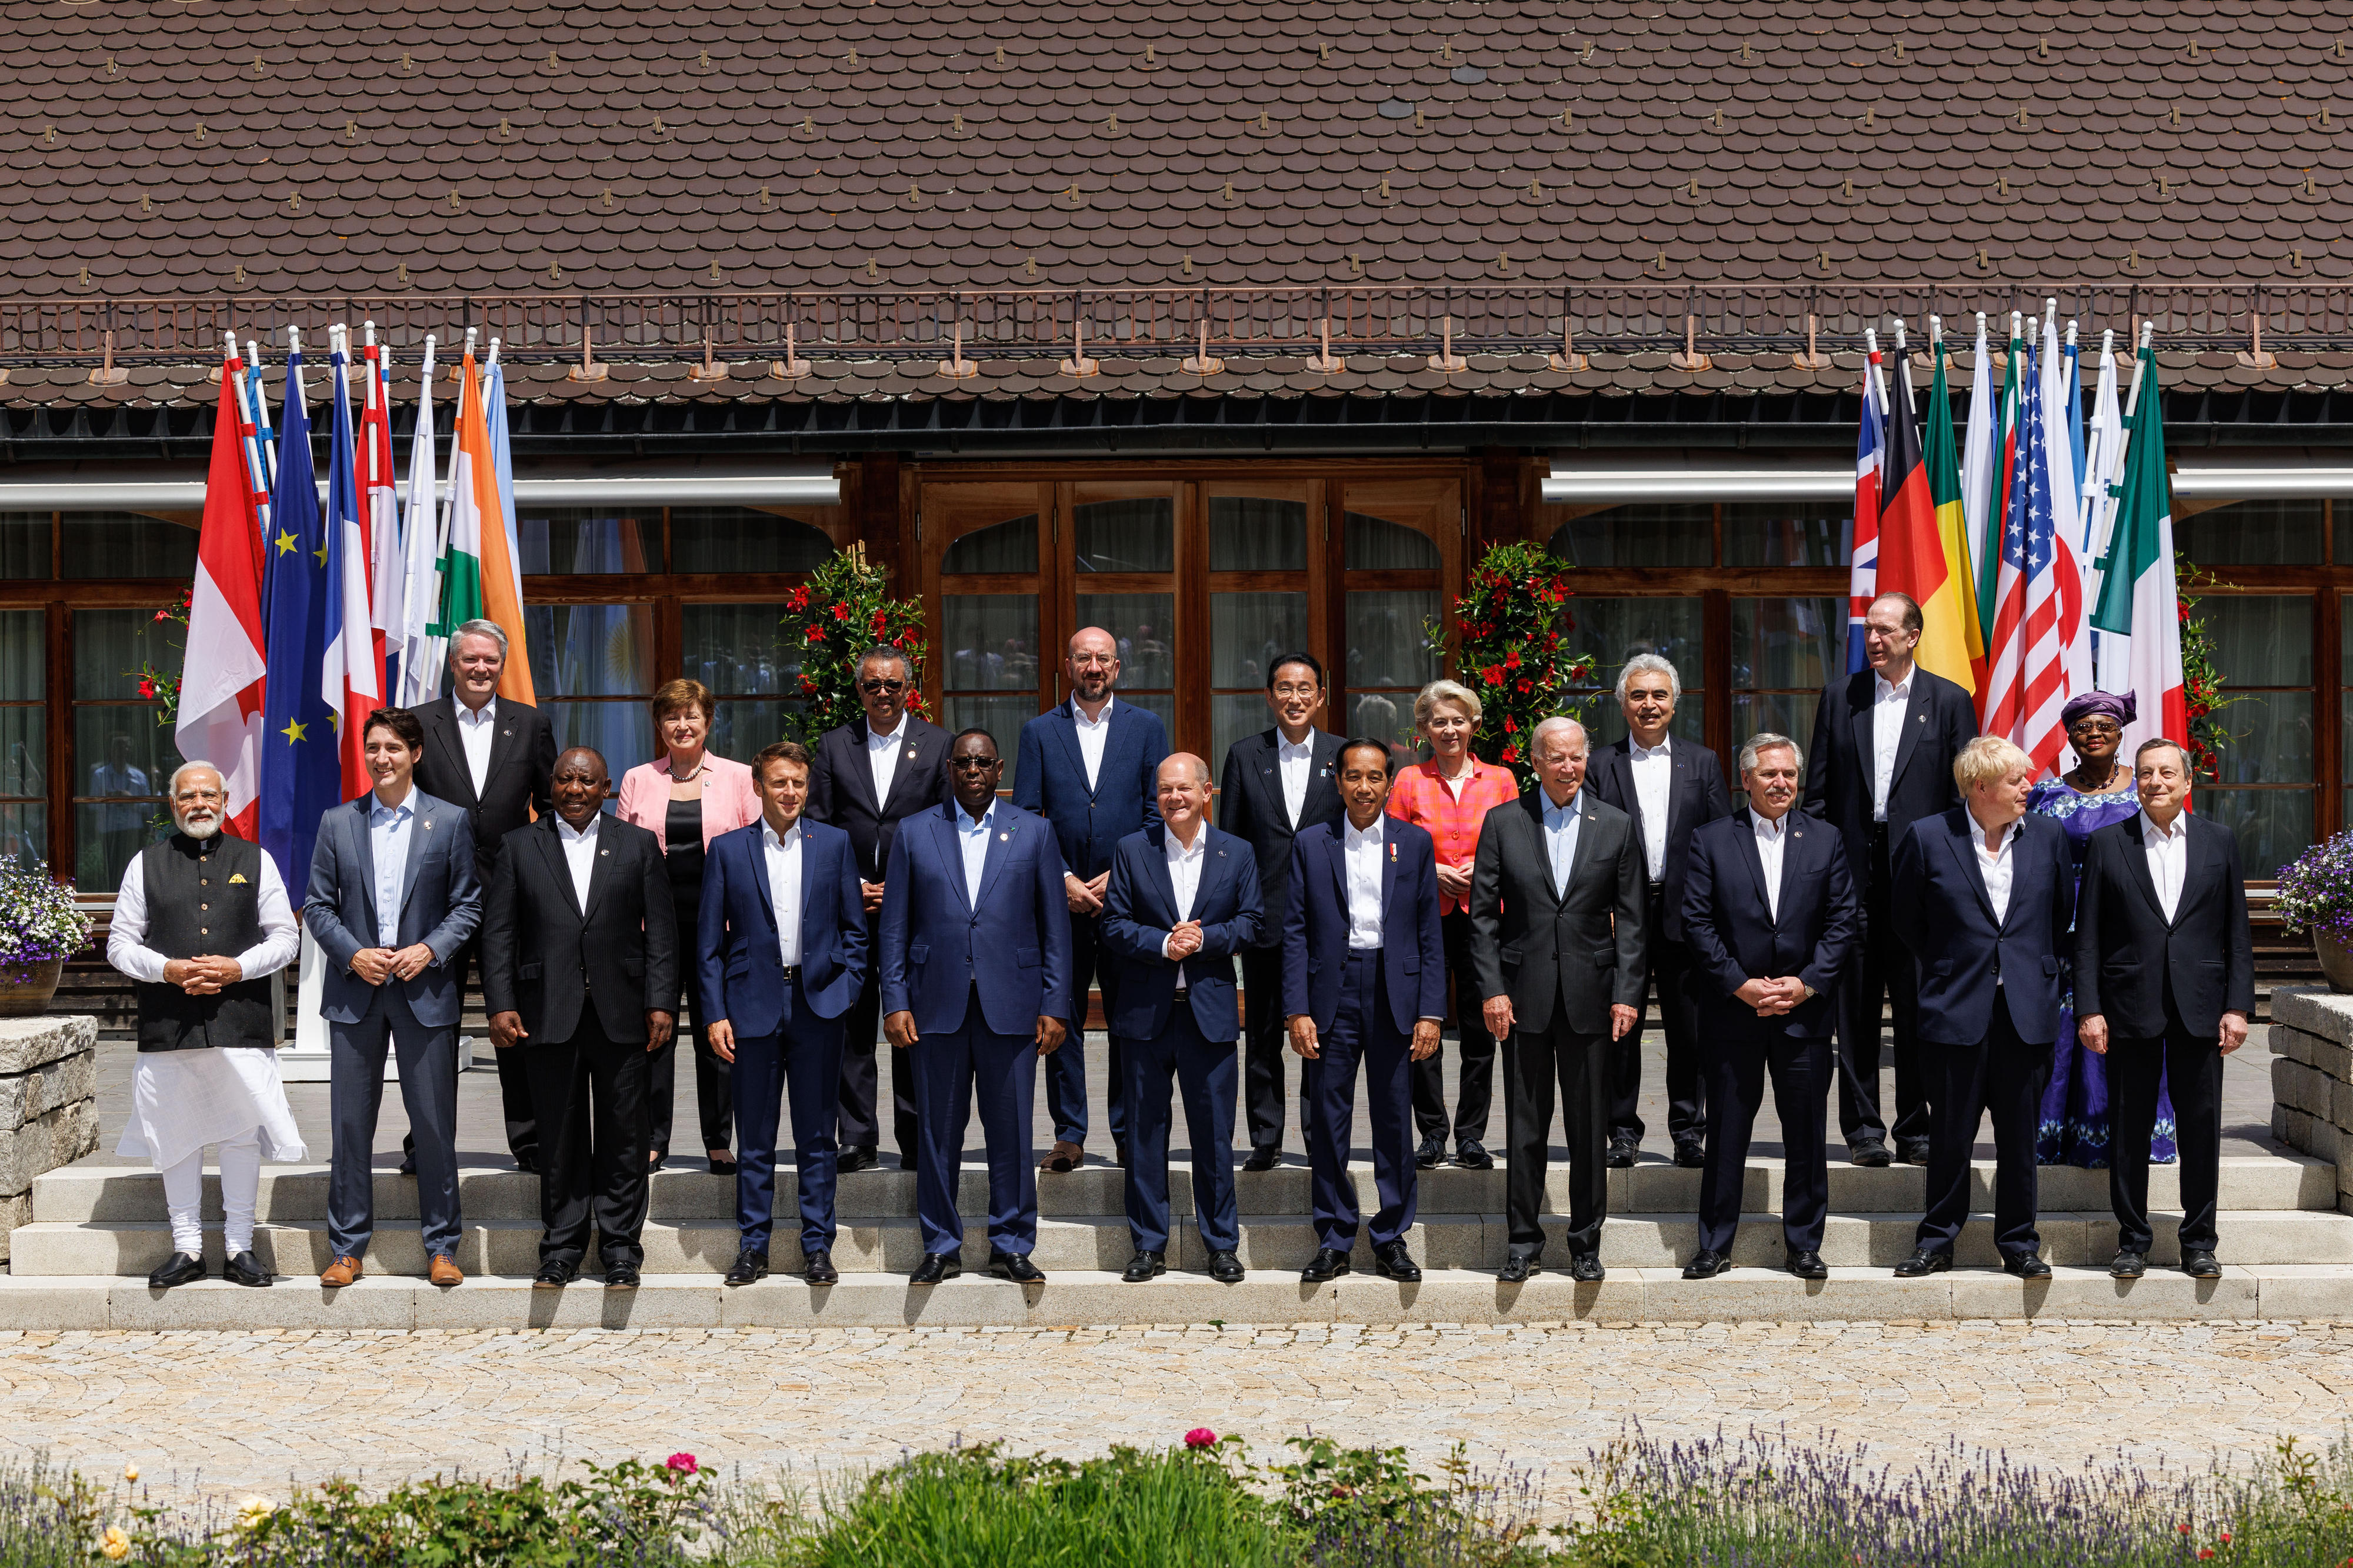 Gruppenfoto der G7-Staats- und Regierungschefs mit den Outreachgästen